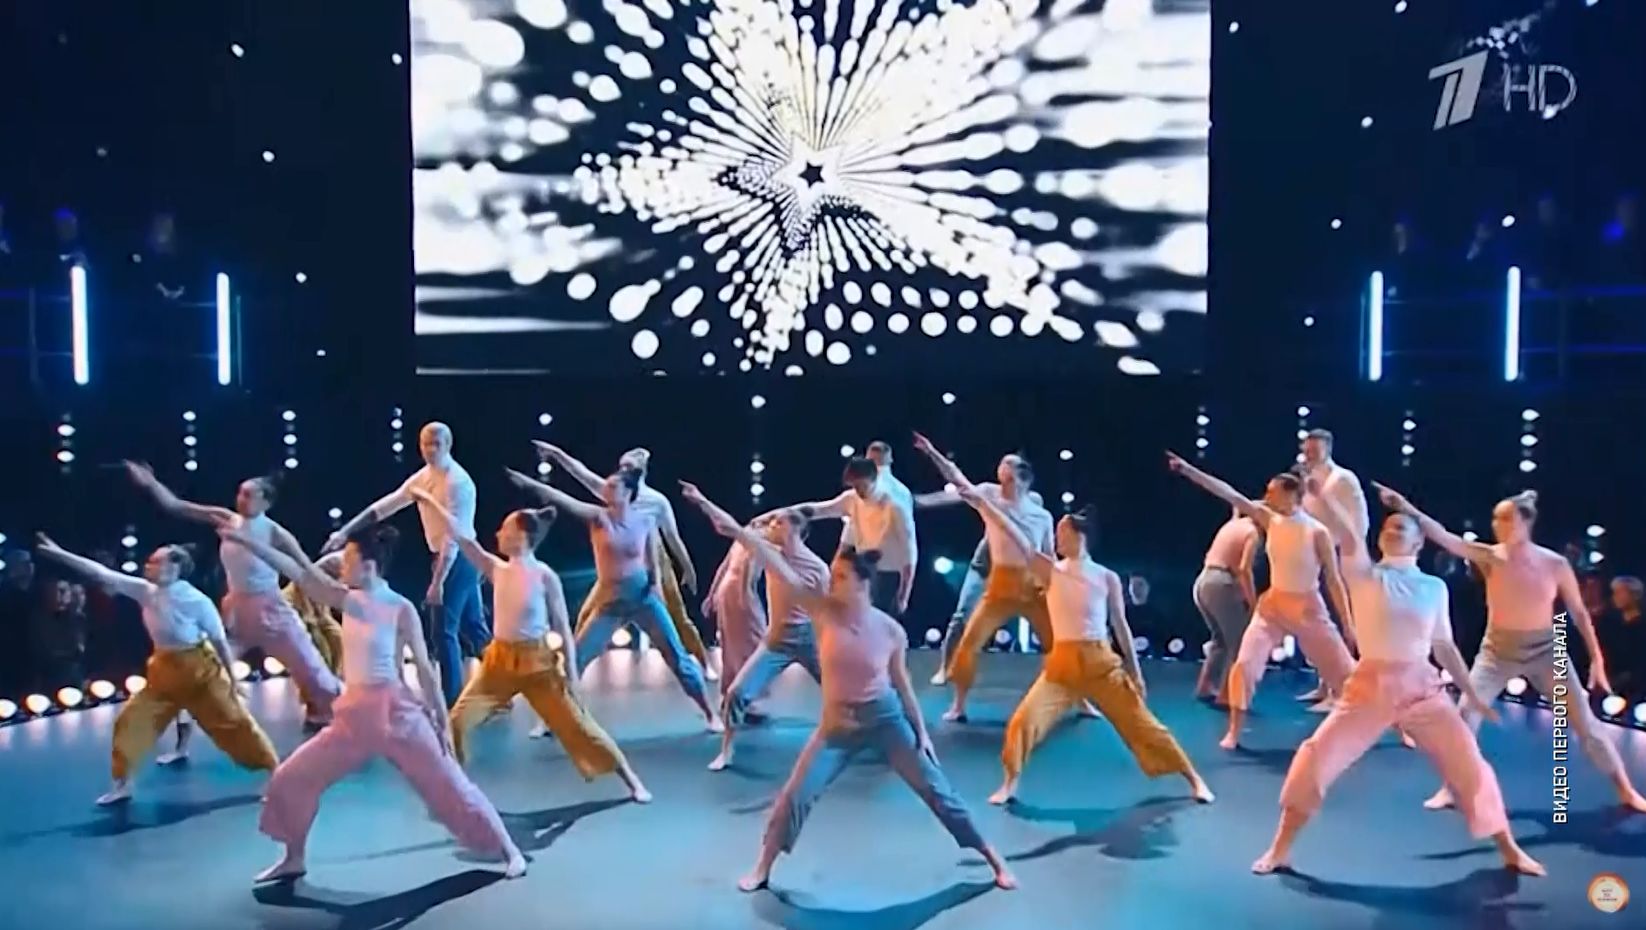 Ярославский танцевальный коллектив «Podval Company» уверенно идет к победе в шоу «Dance Революция» на федеральном канале